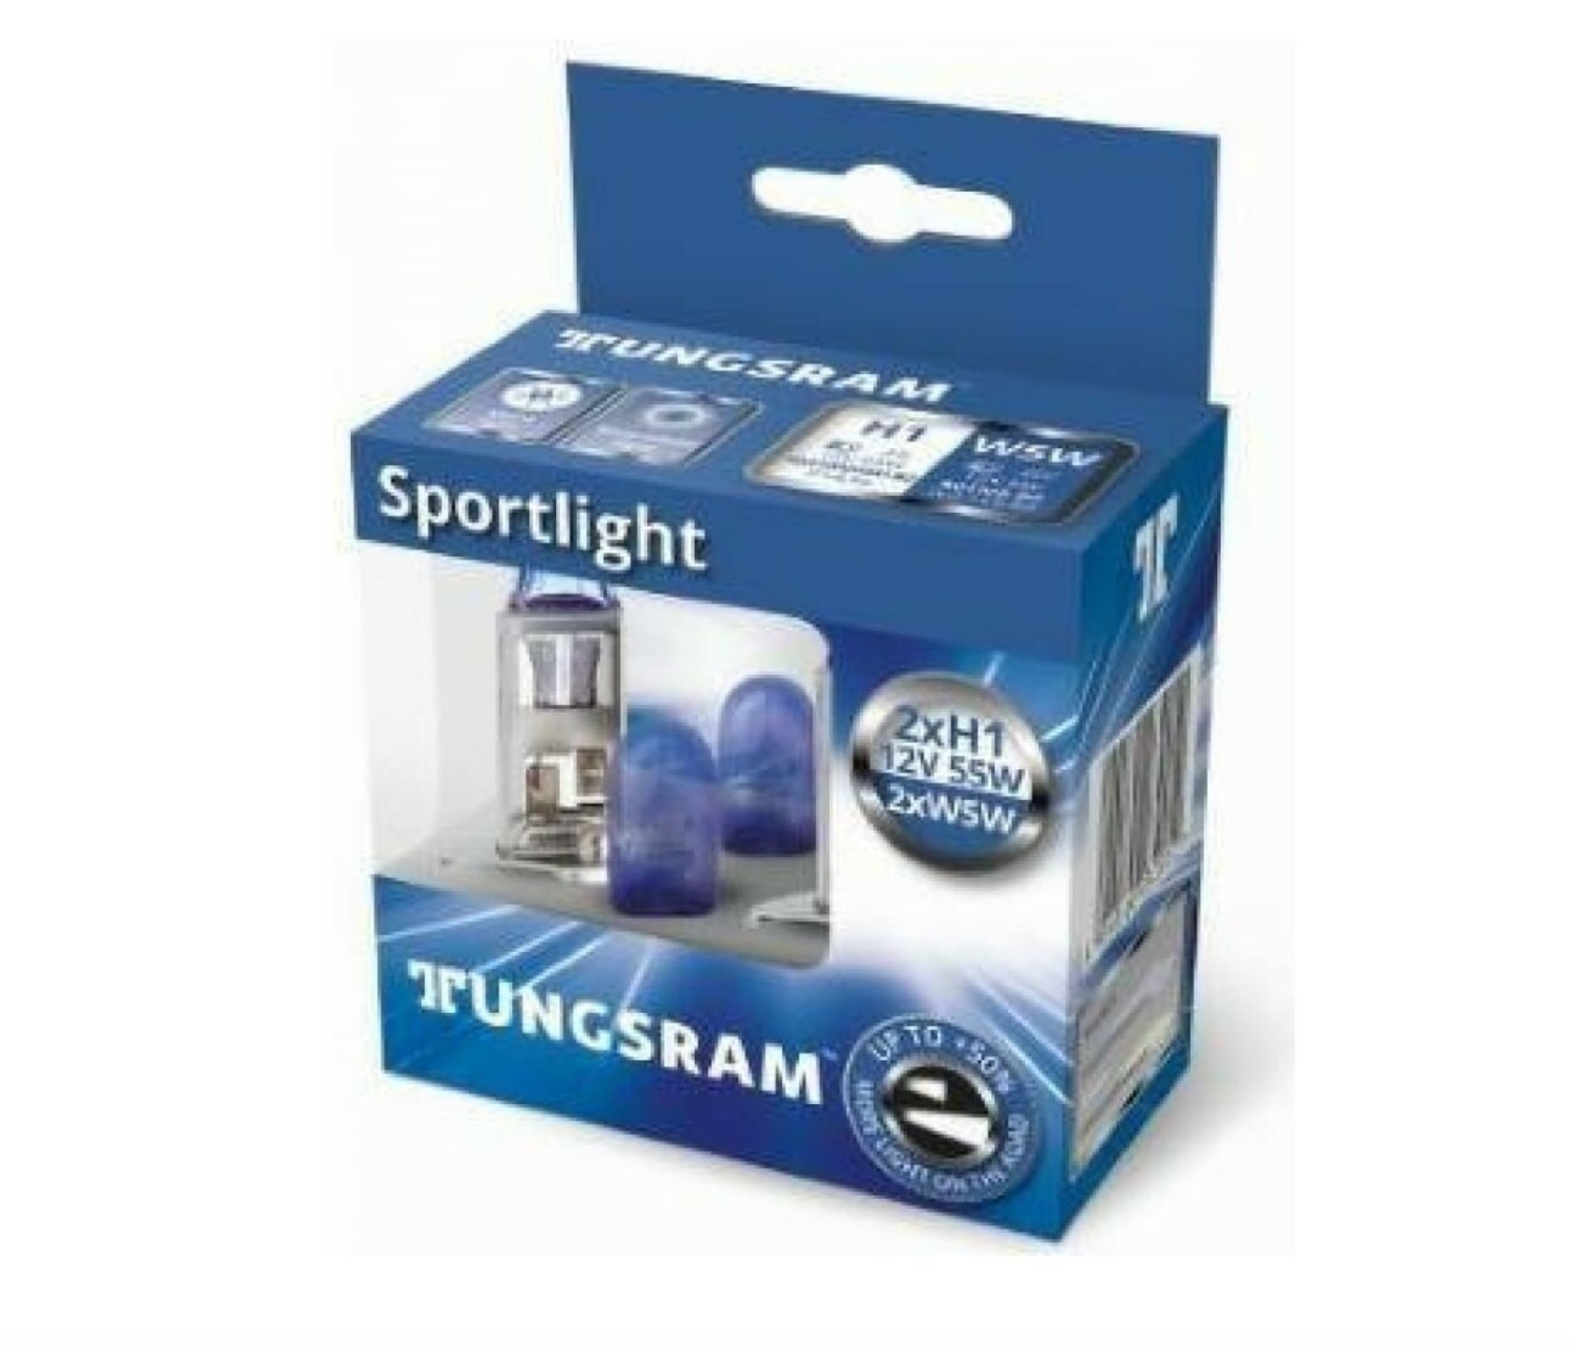 Tungsram 12v Лампа  H1  55w/ W5w Megalight Ultra +90 Компл. 4шт  50310xu B2+501nb B2 TUNGS